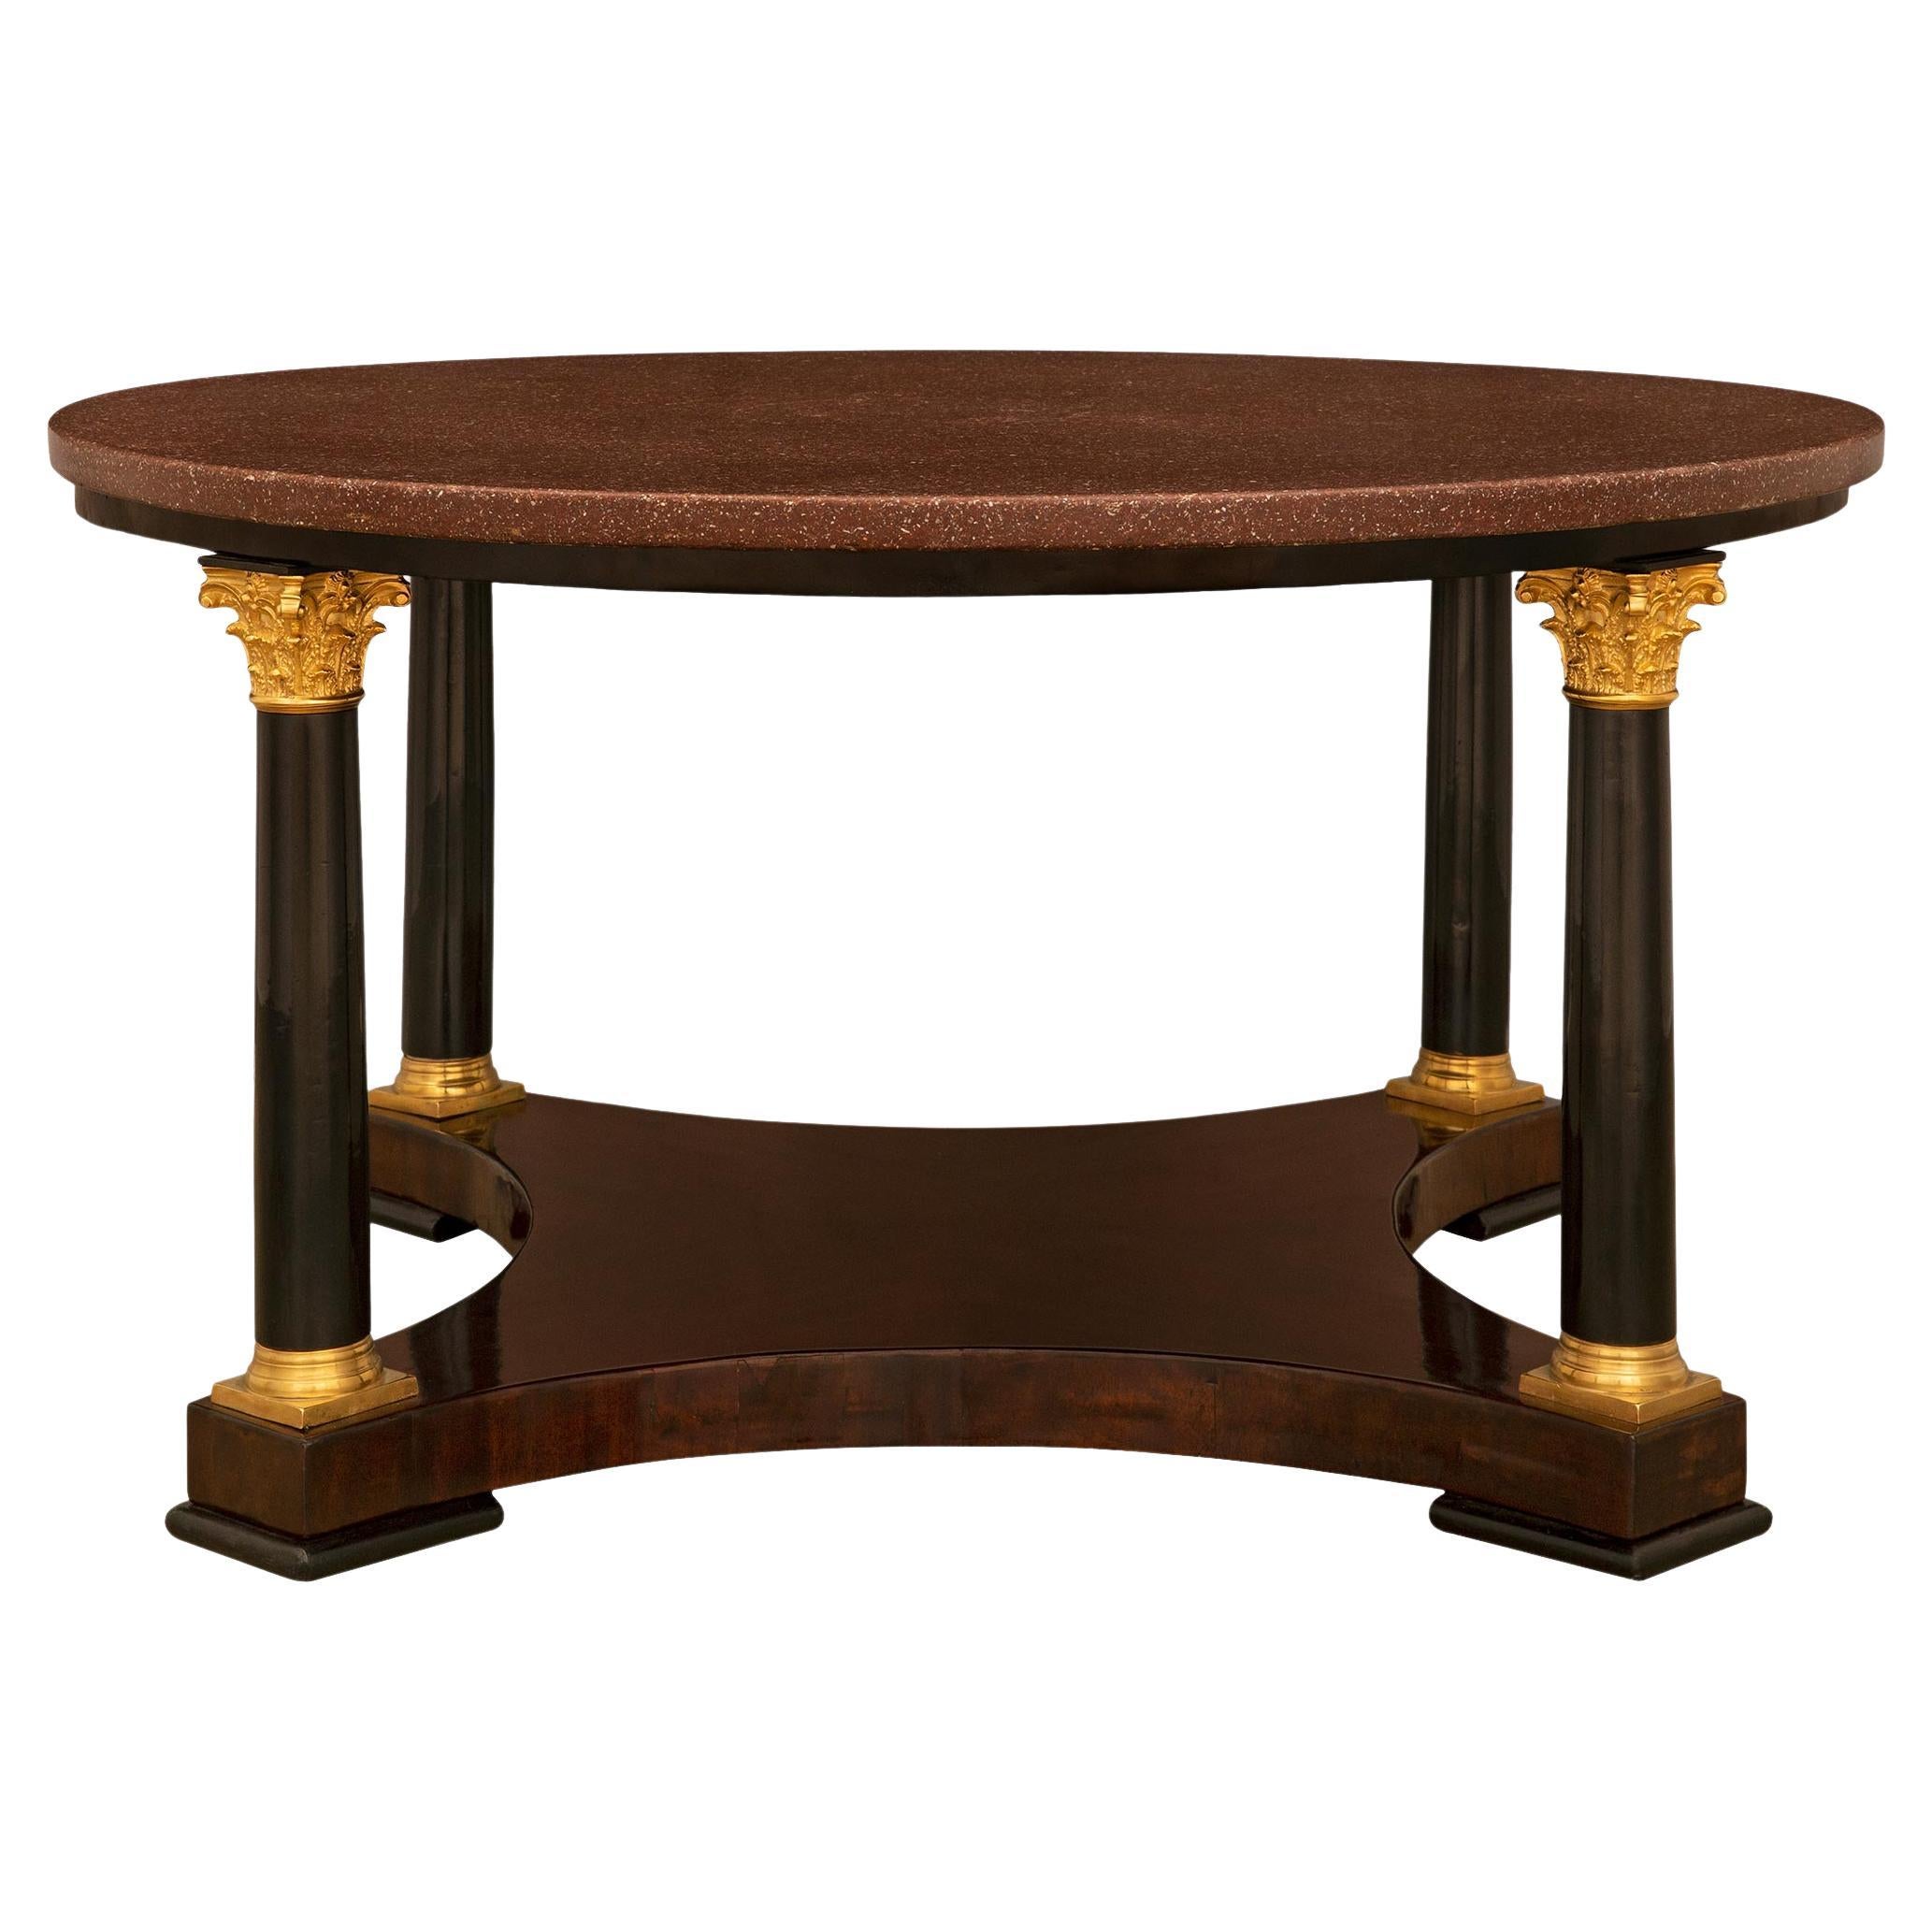 Table basse de style néoclassique du XIXe siècle en acajou, bronze doré et porphyre